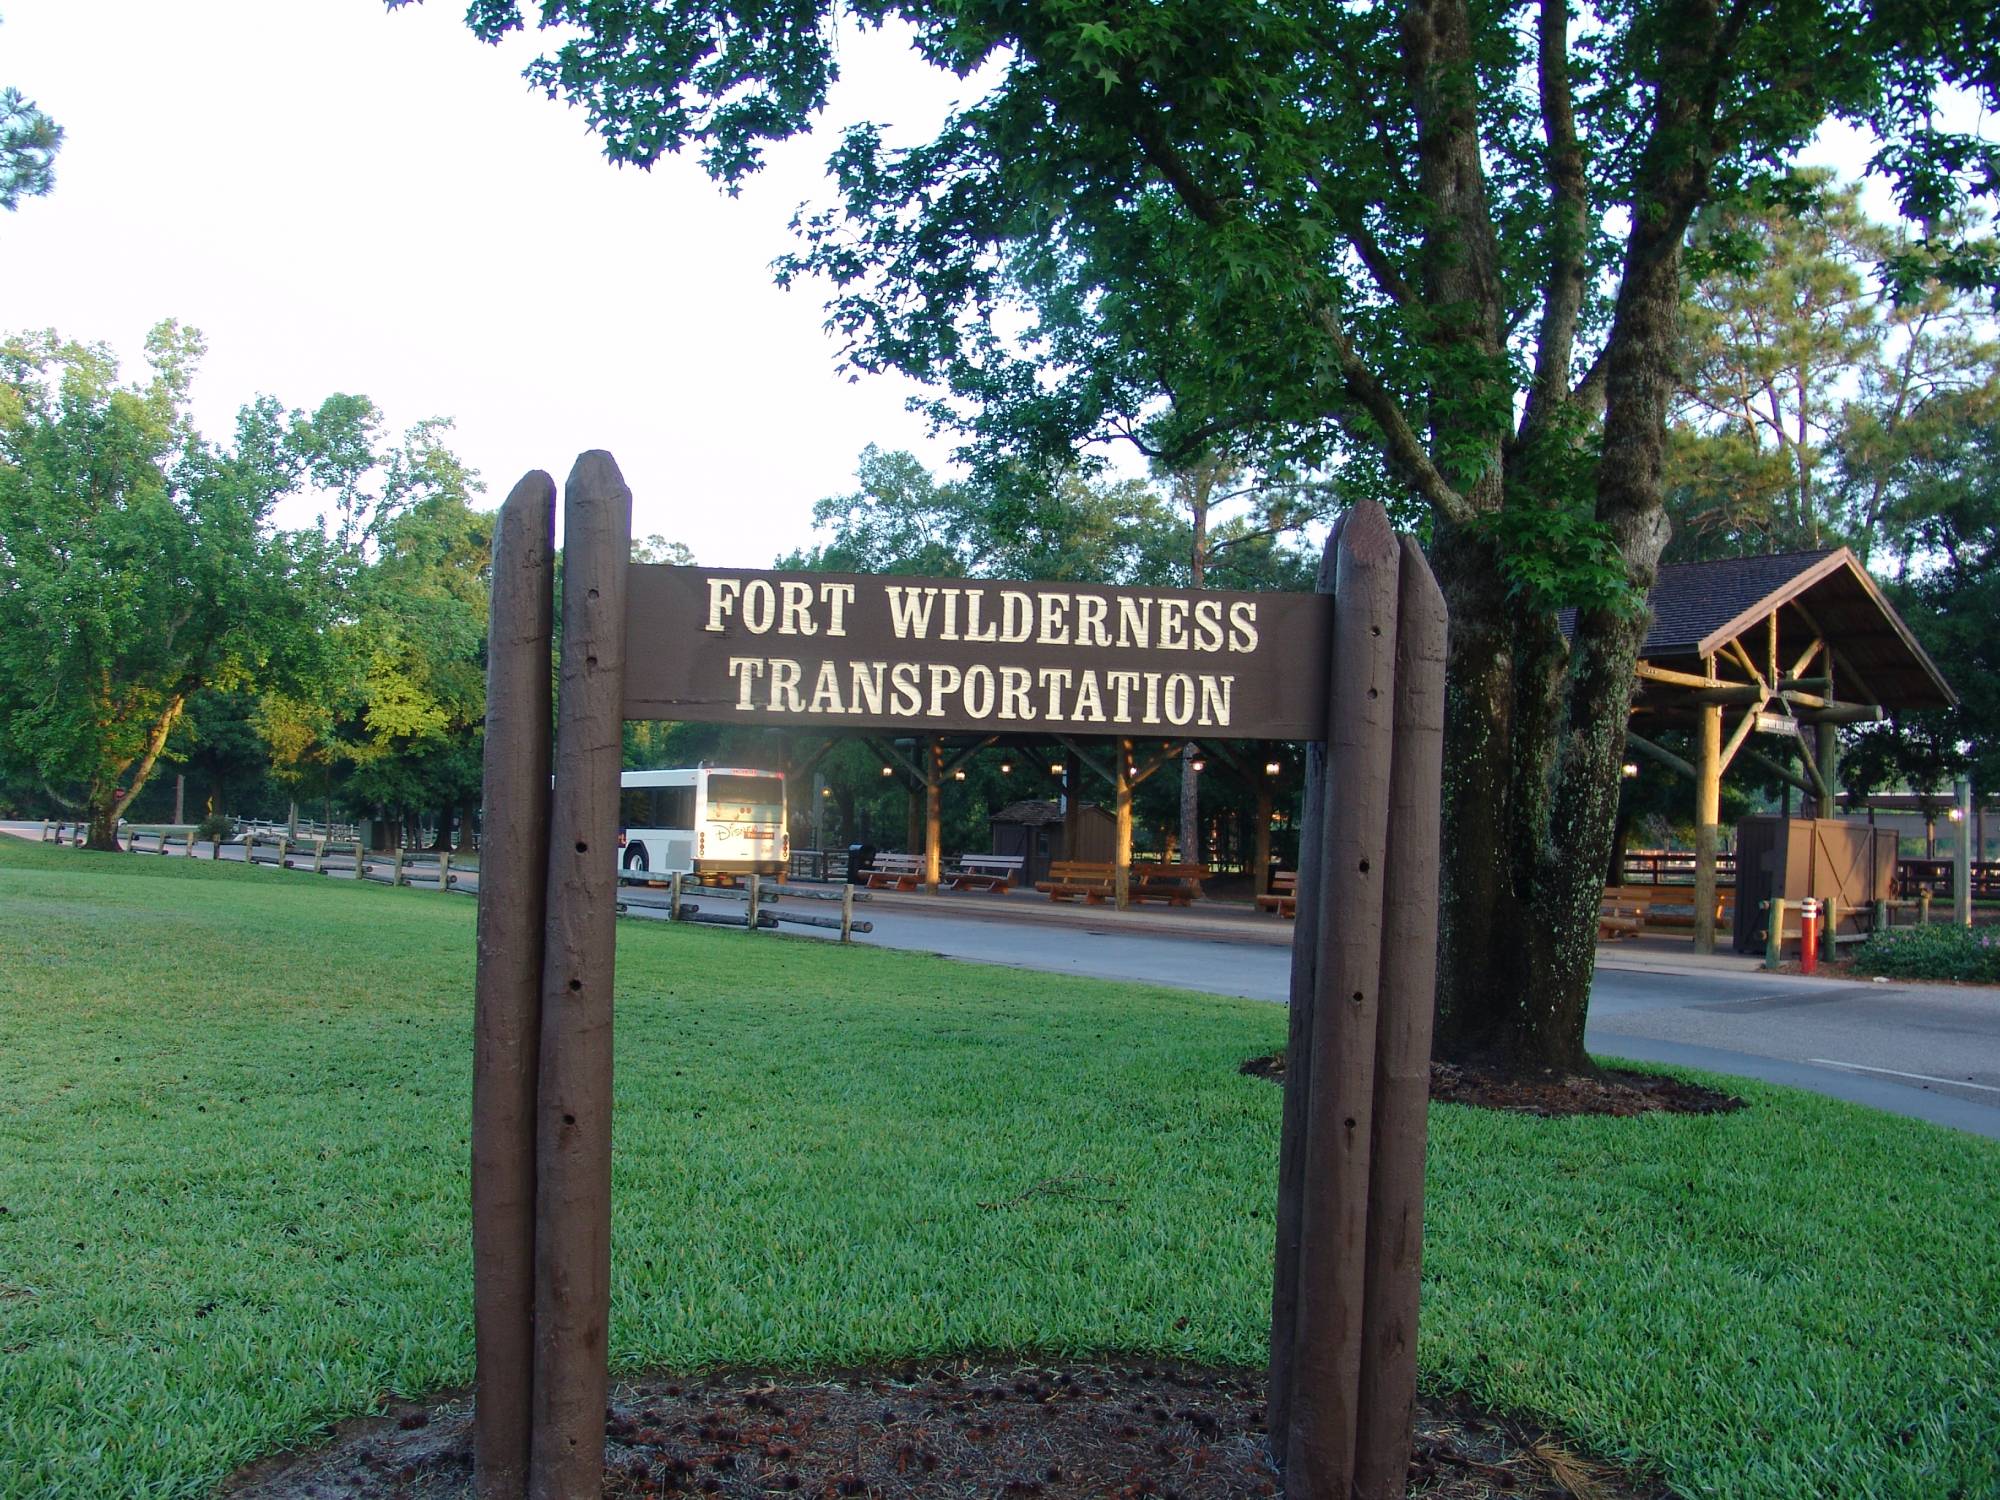 Fort Wilderness - Transportation hub at entrance